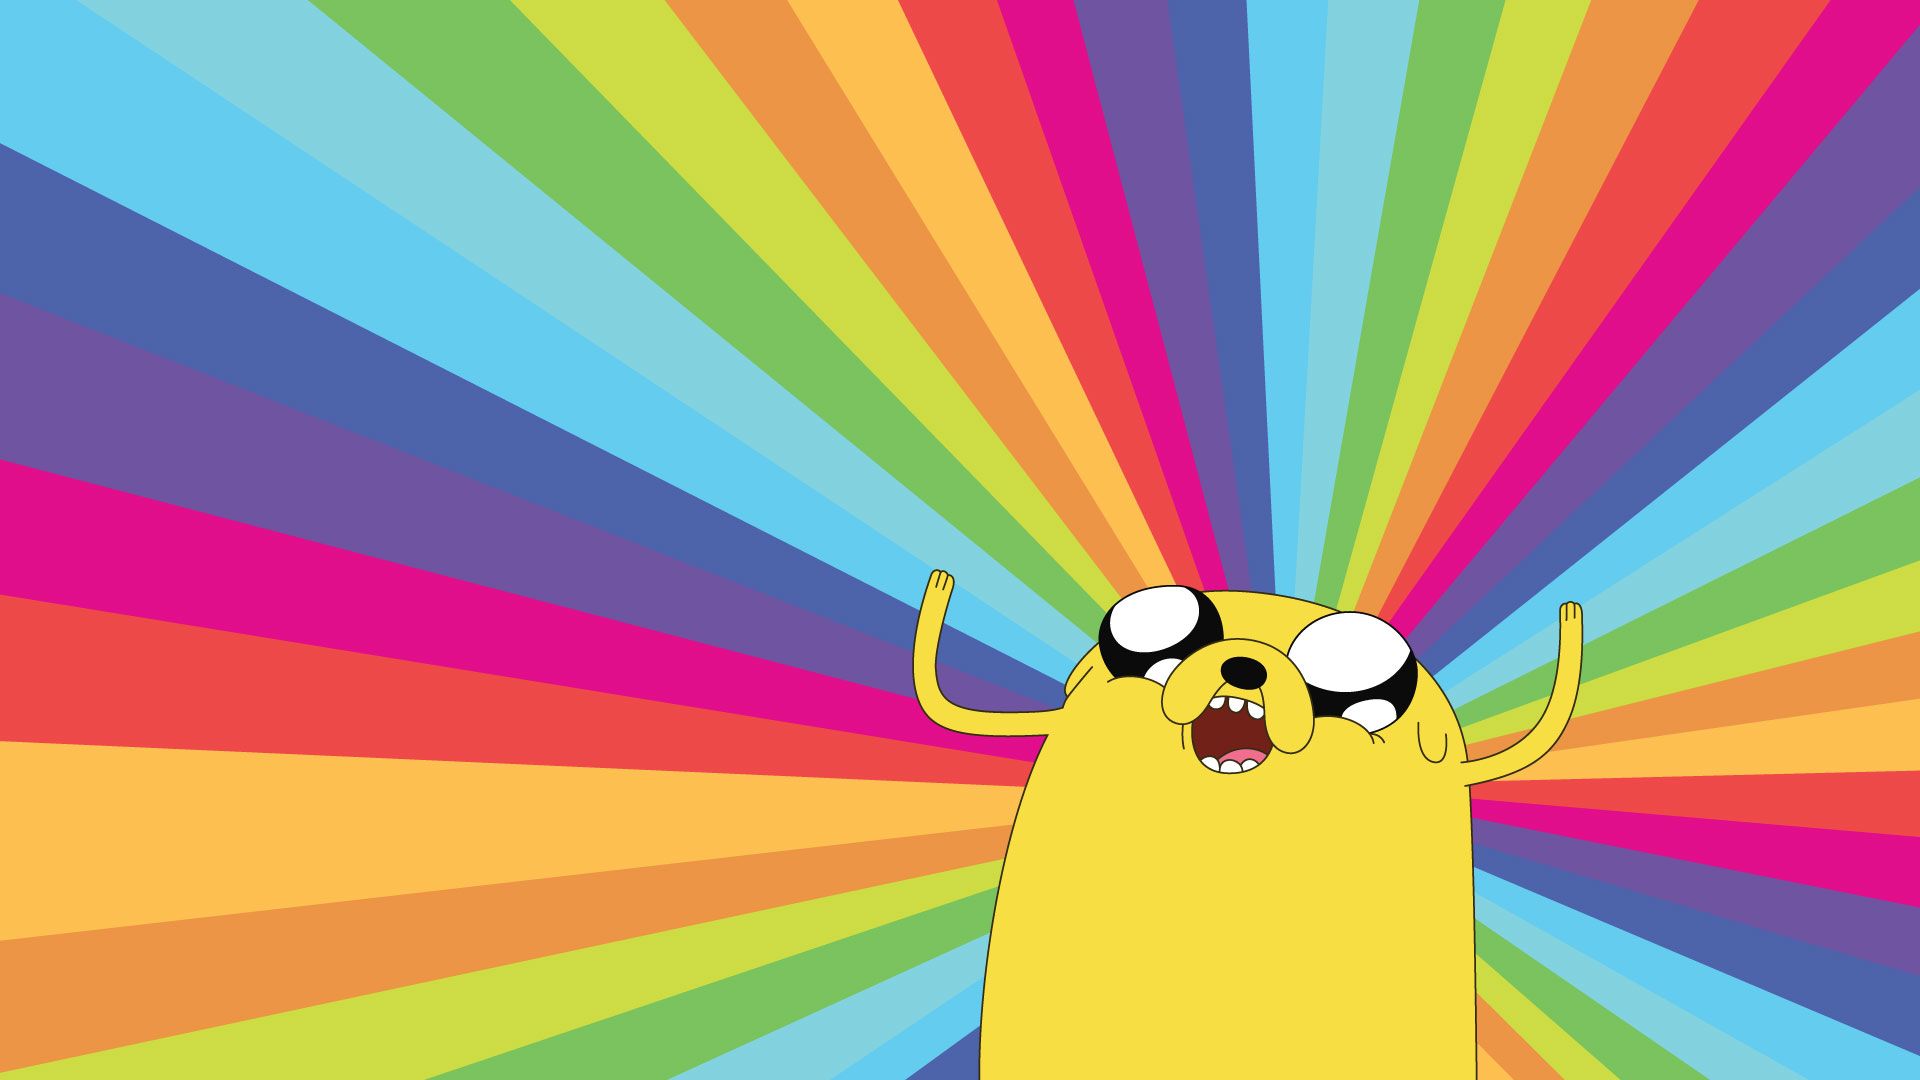 Adventure Time HD Wallpaper | 1920x1080 | ID:31684